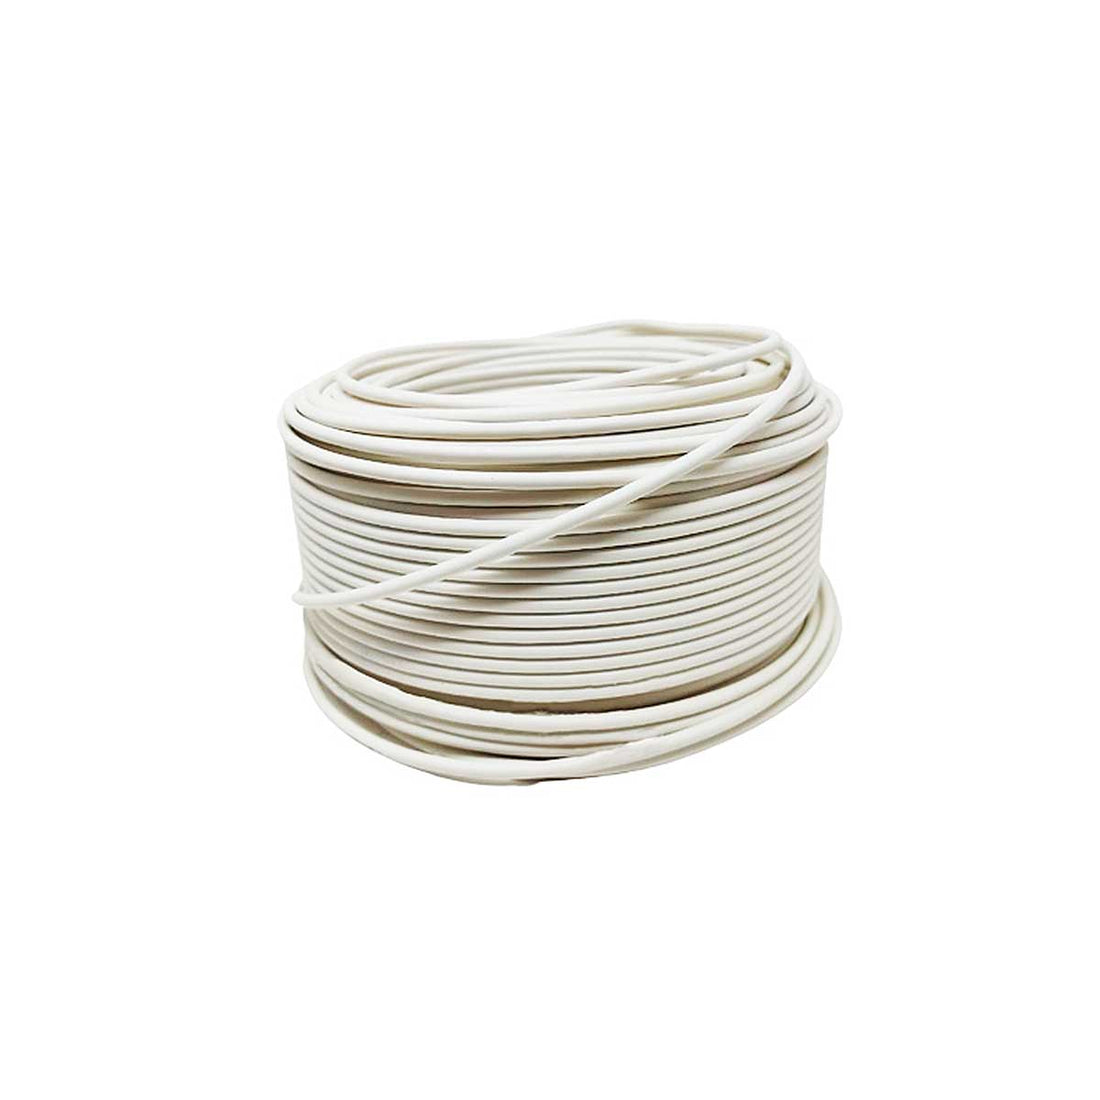 Cable Electrico Cca Calibre 10 Blanco Rollo 100m Konect KONECT Ferreabasto